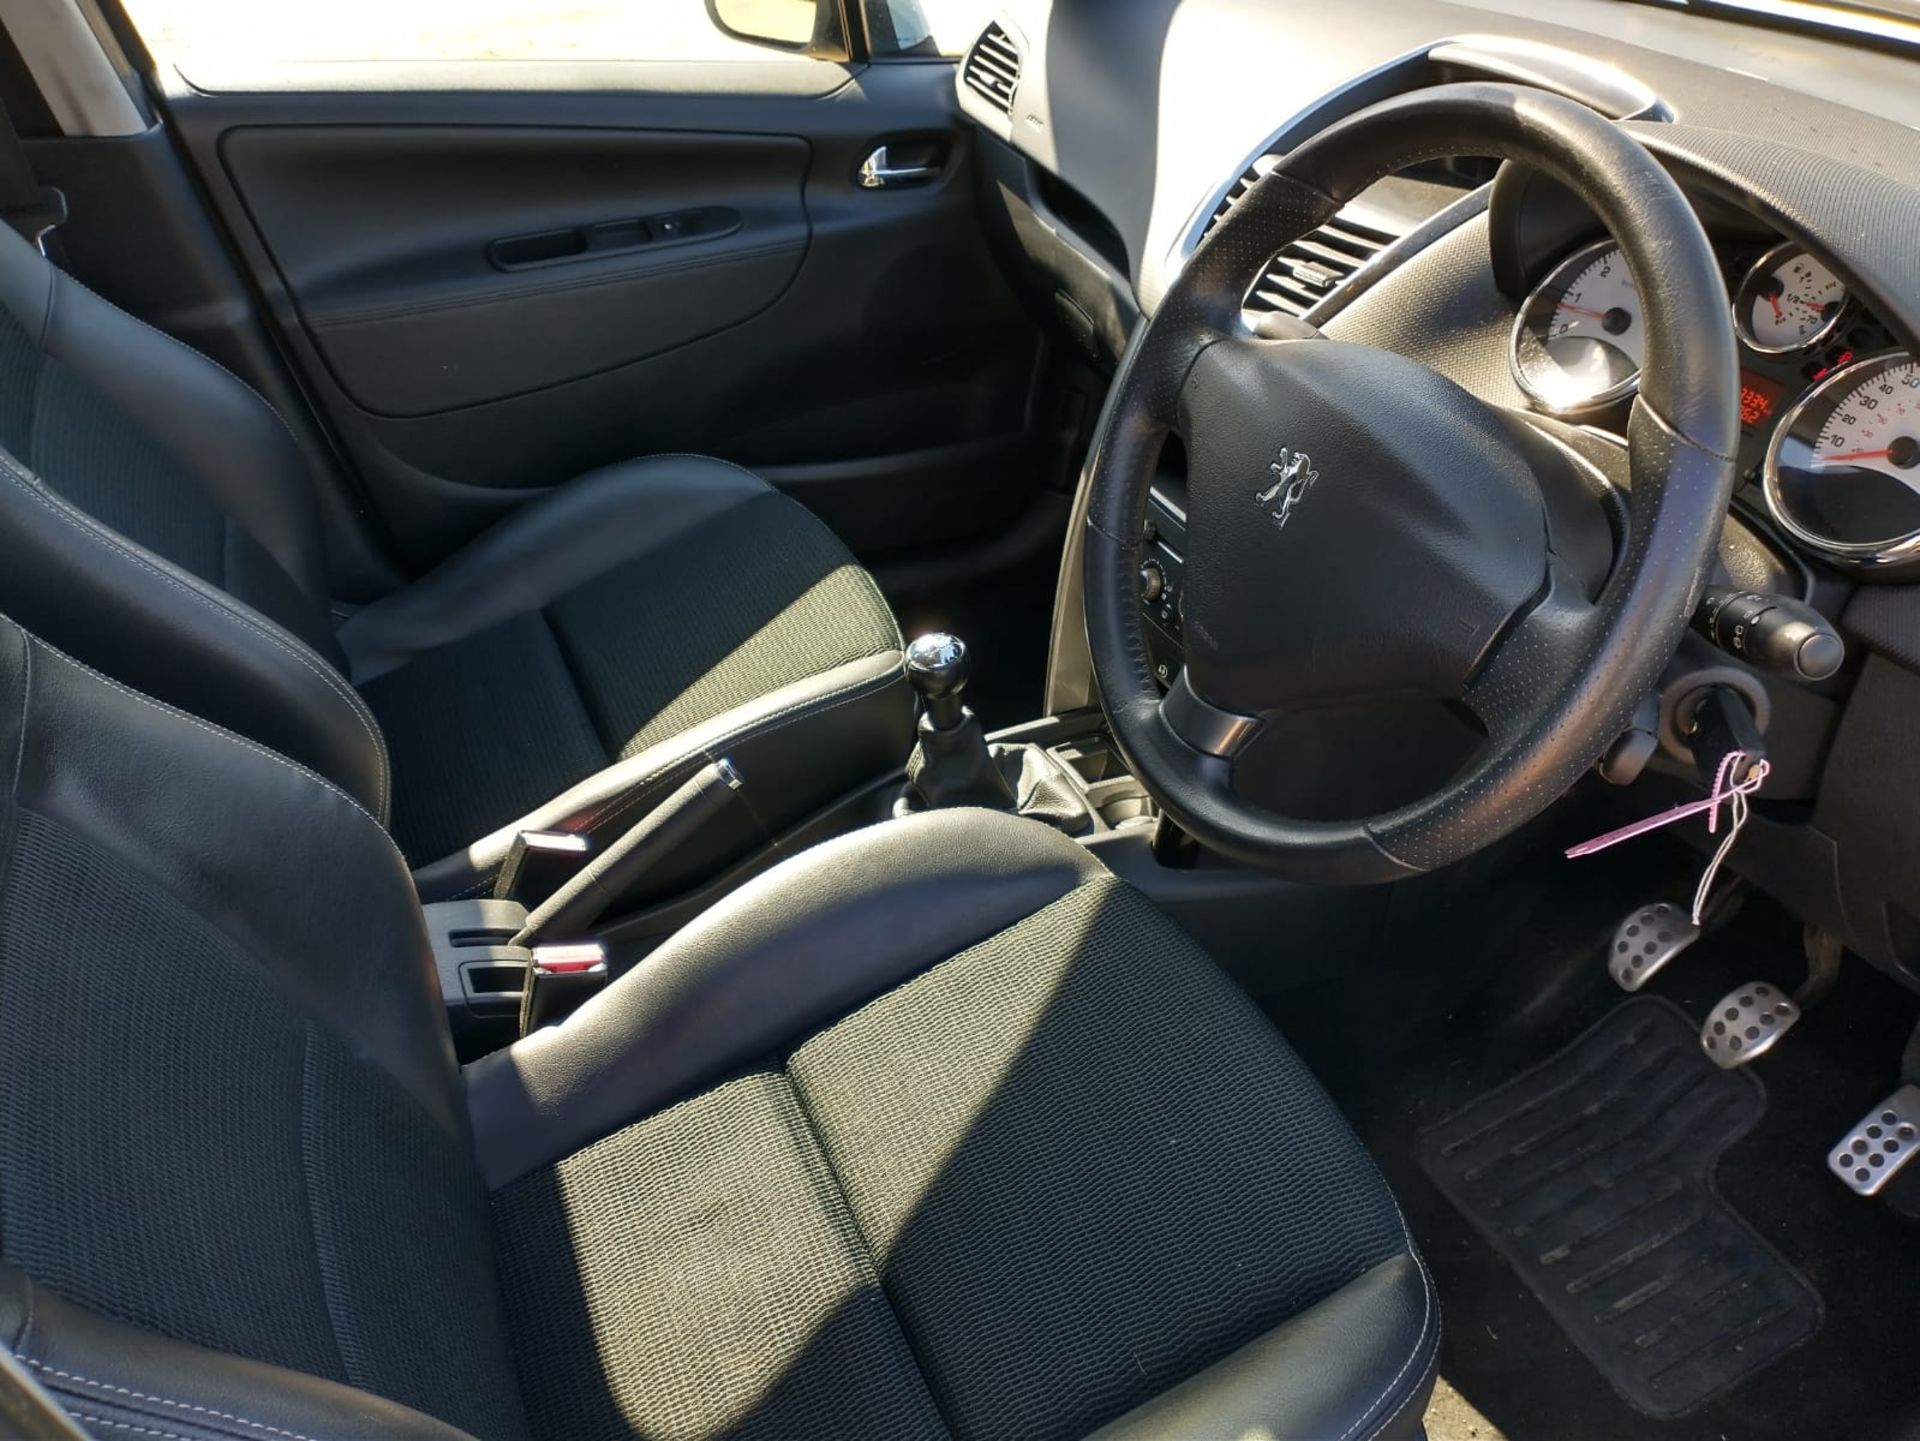 2012 Peugeot 207 Allure 1.6 5DR Hatchback - Image 10 of 16